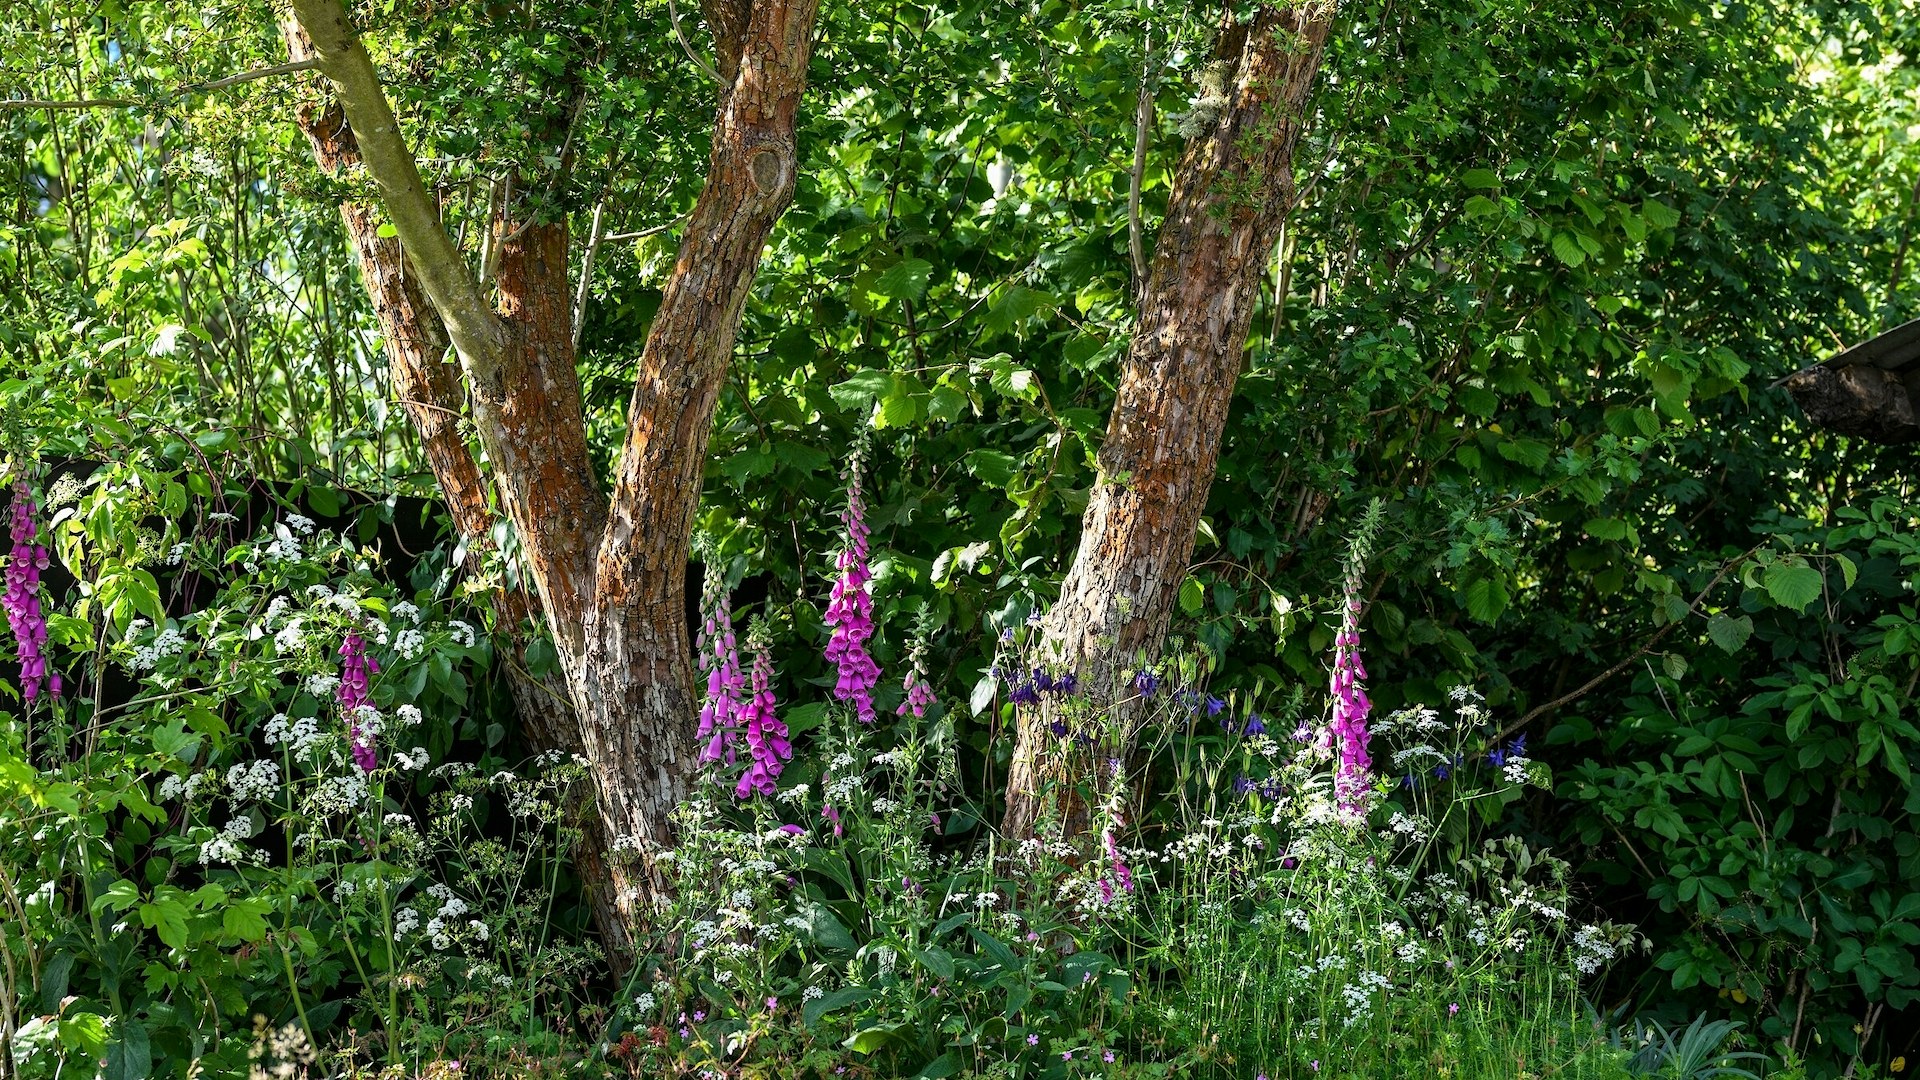 A Rewilding Britain Garden at Chelsea Flower Show